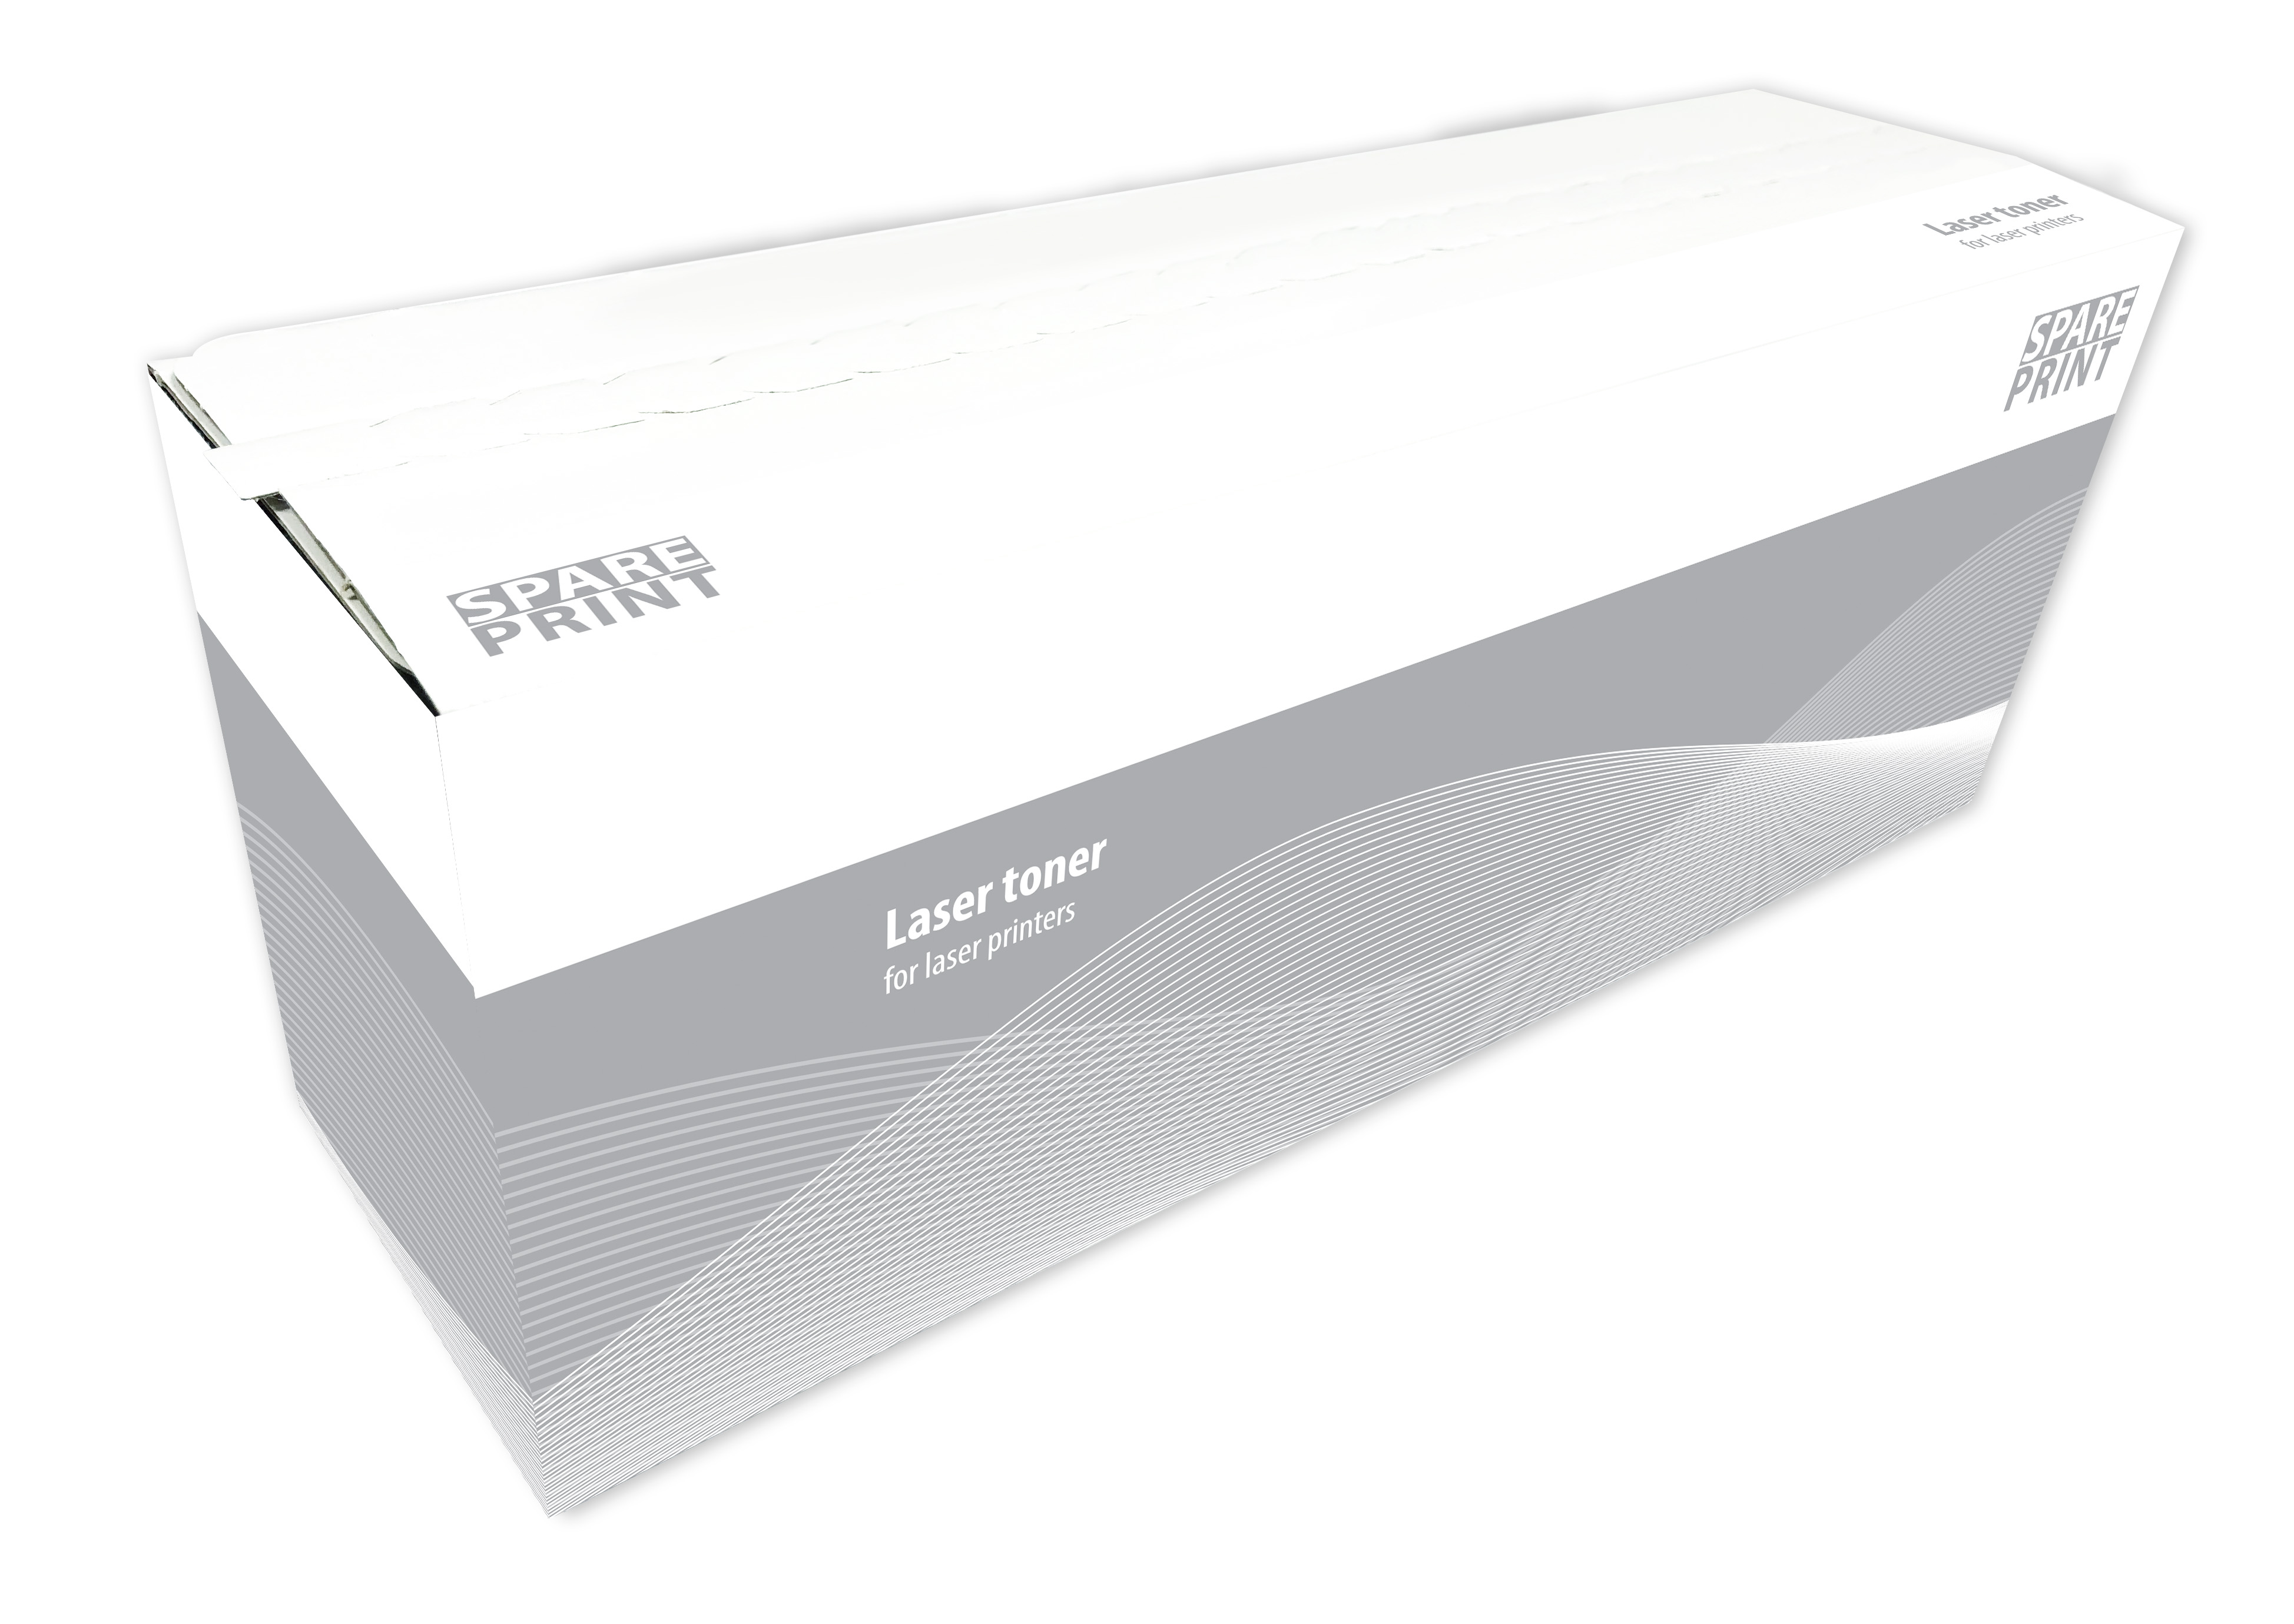 SPARE PRINT kompatibilní toner MLT-D1042S Black pro tiskárny Samsung